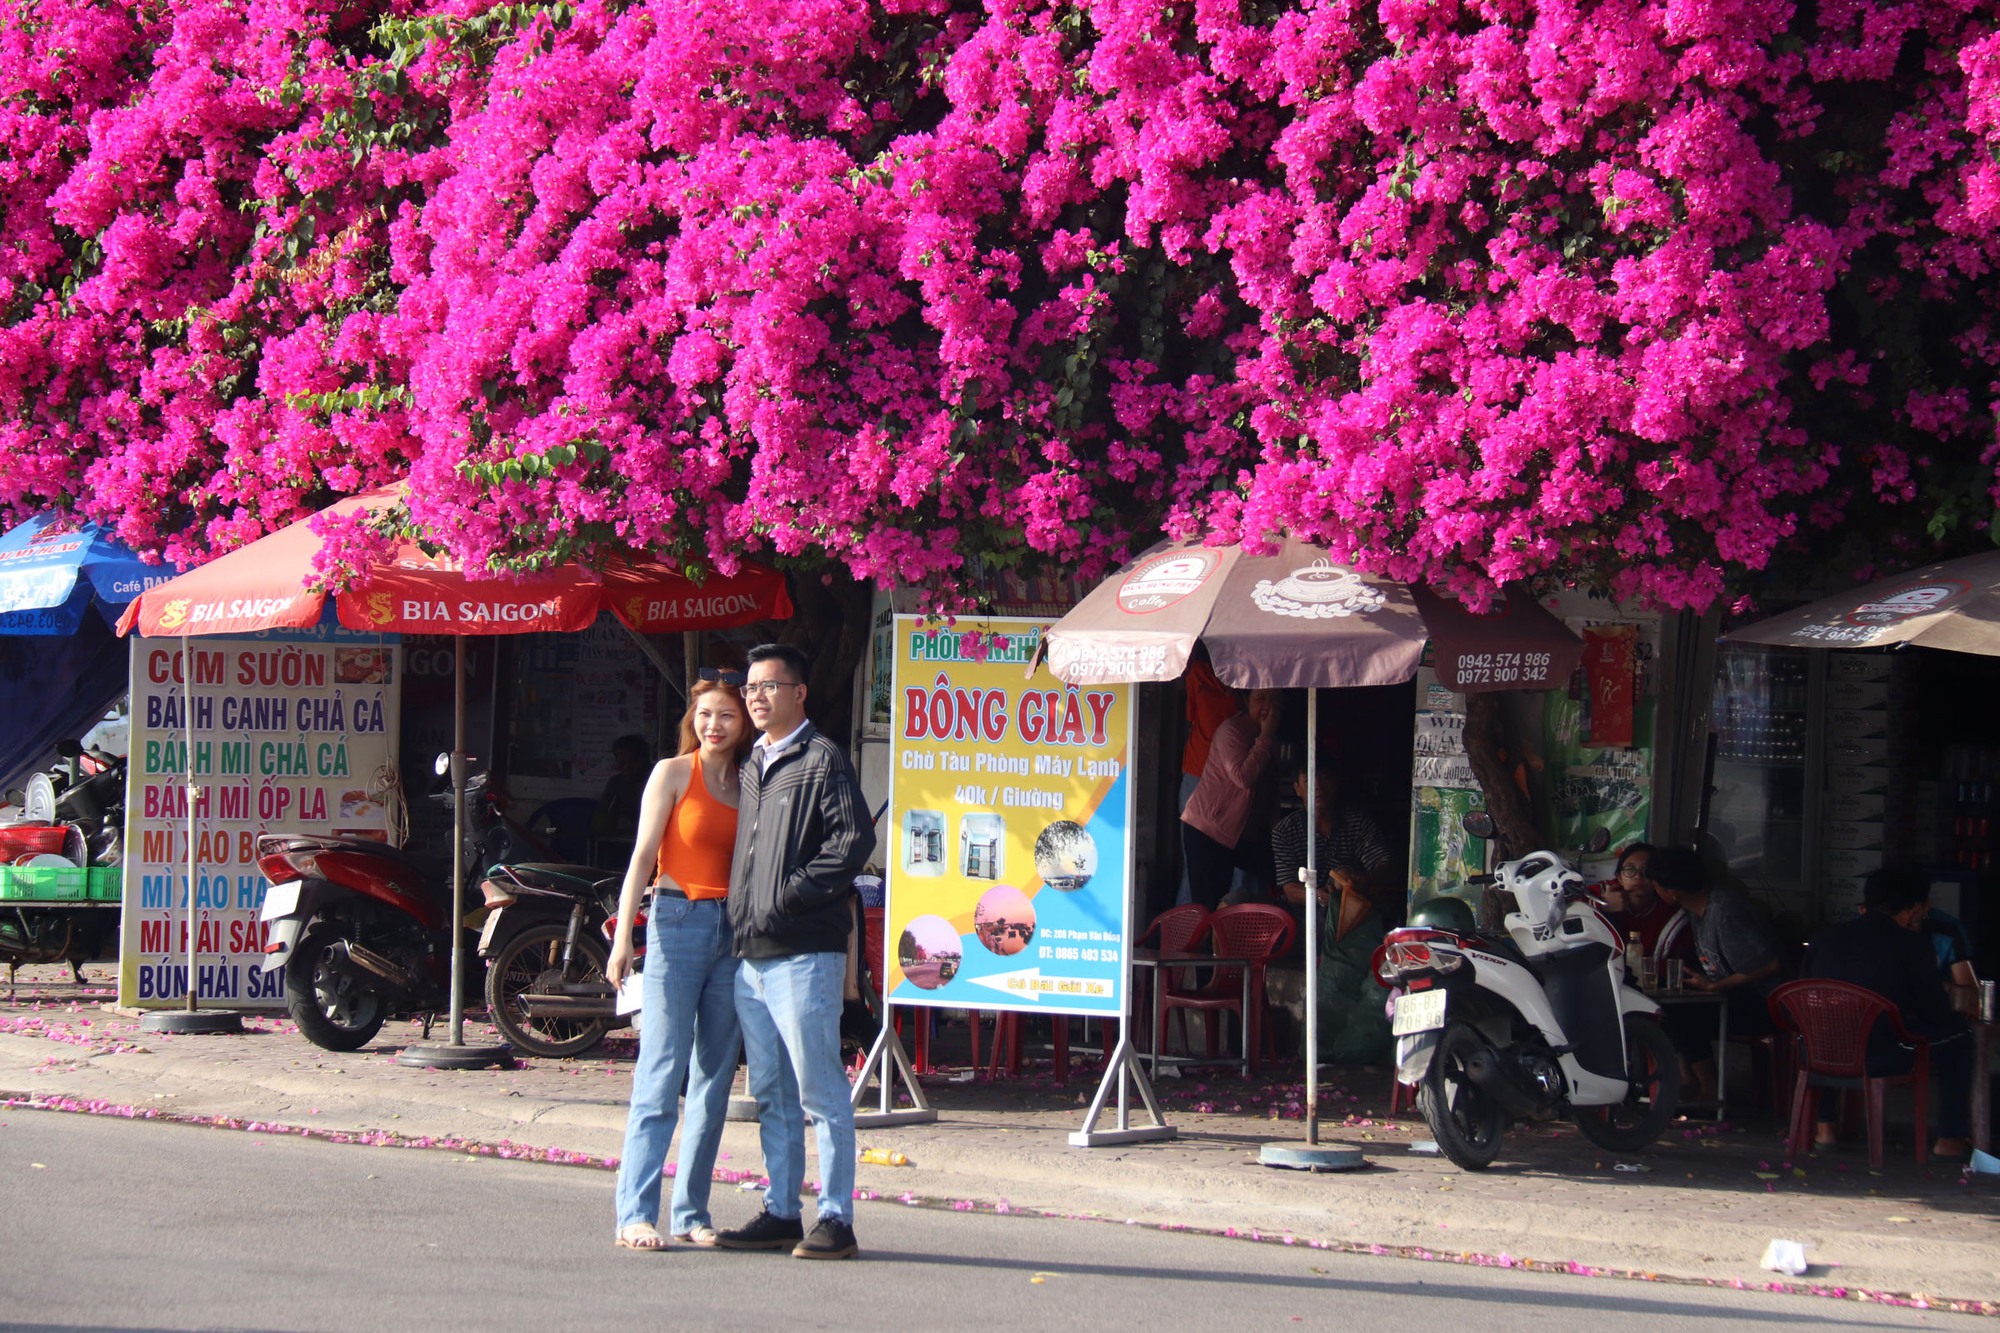  Độc đáo giàn hoa giấy rực đỏ bên cạnh nhà thờ ở Phan Thiết - Ảnh 3.